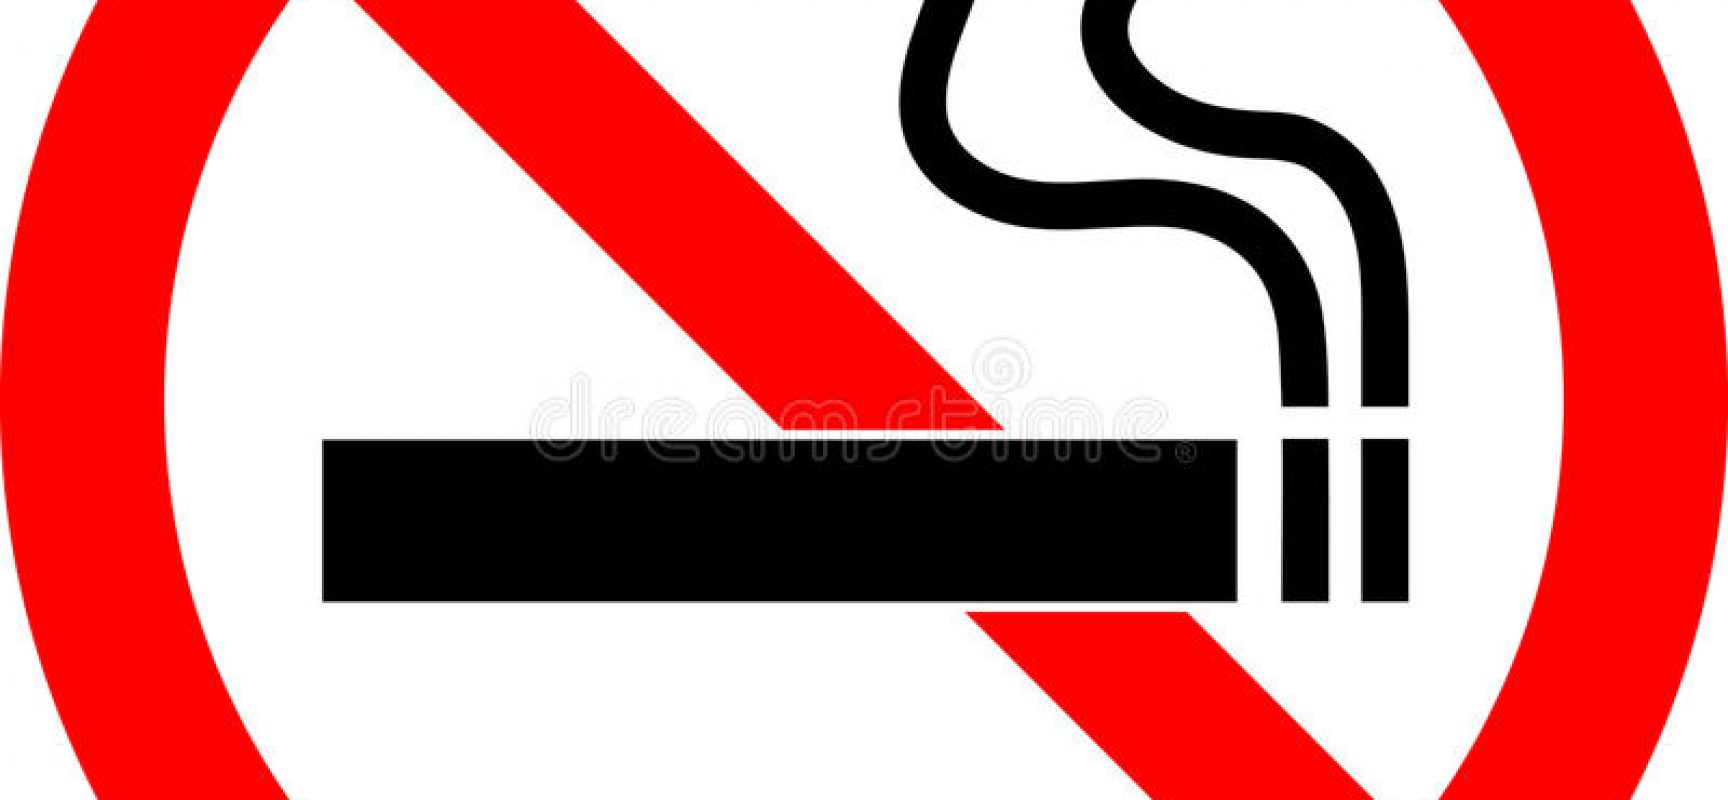 Ενημέρωση των σωματείων για το ΦΕΚ 4177 που αφορά την απαγόρευση του καπνίσματος στους δημόσιους χώρους και στους χώρους εργασίας.